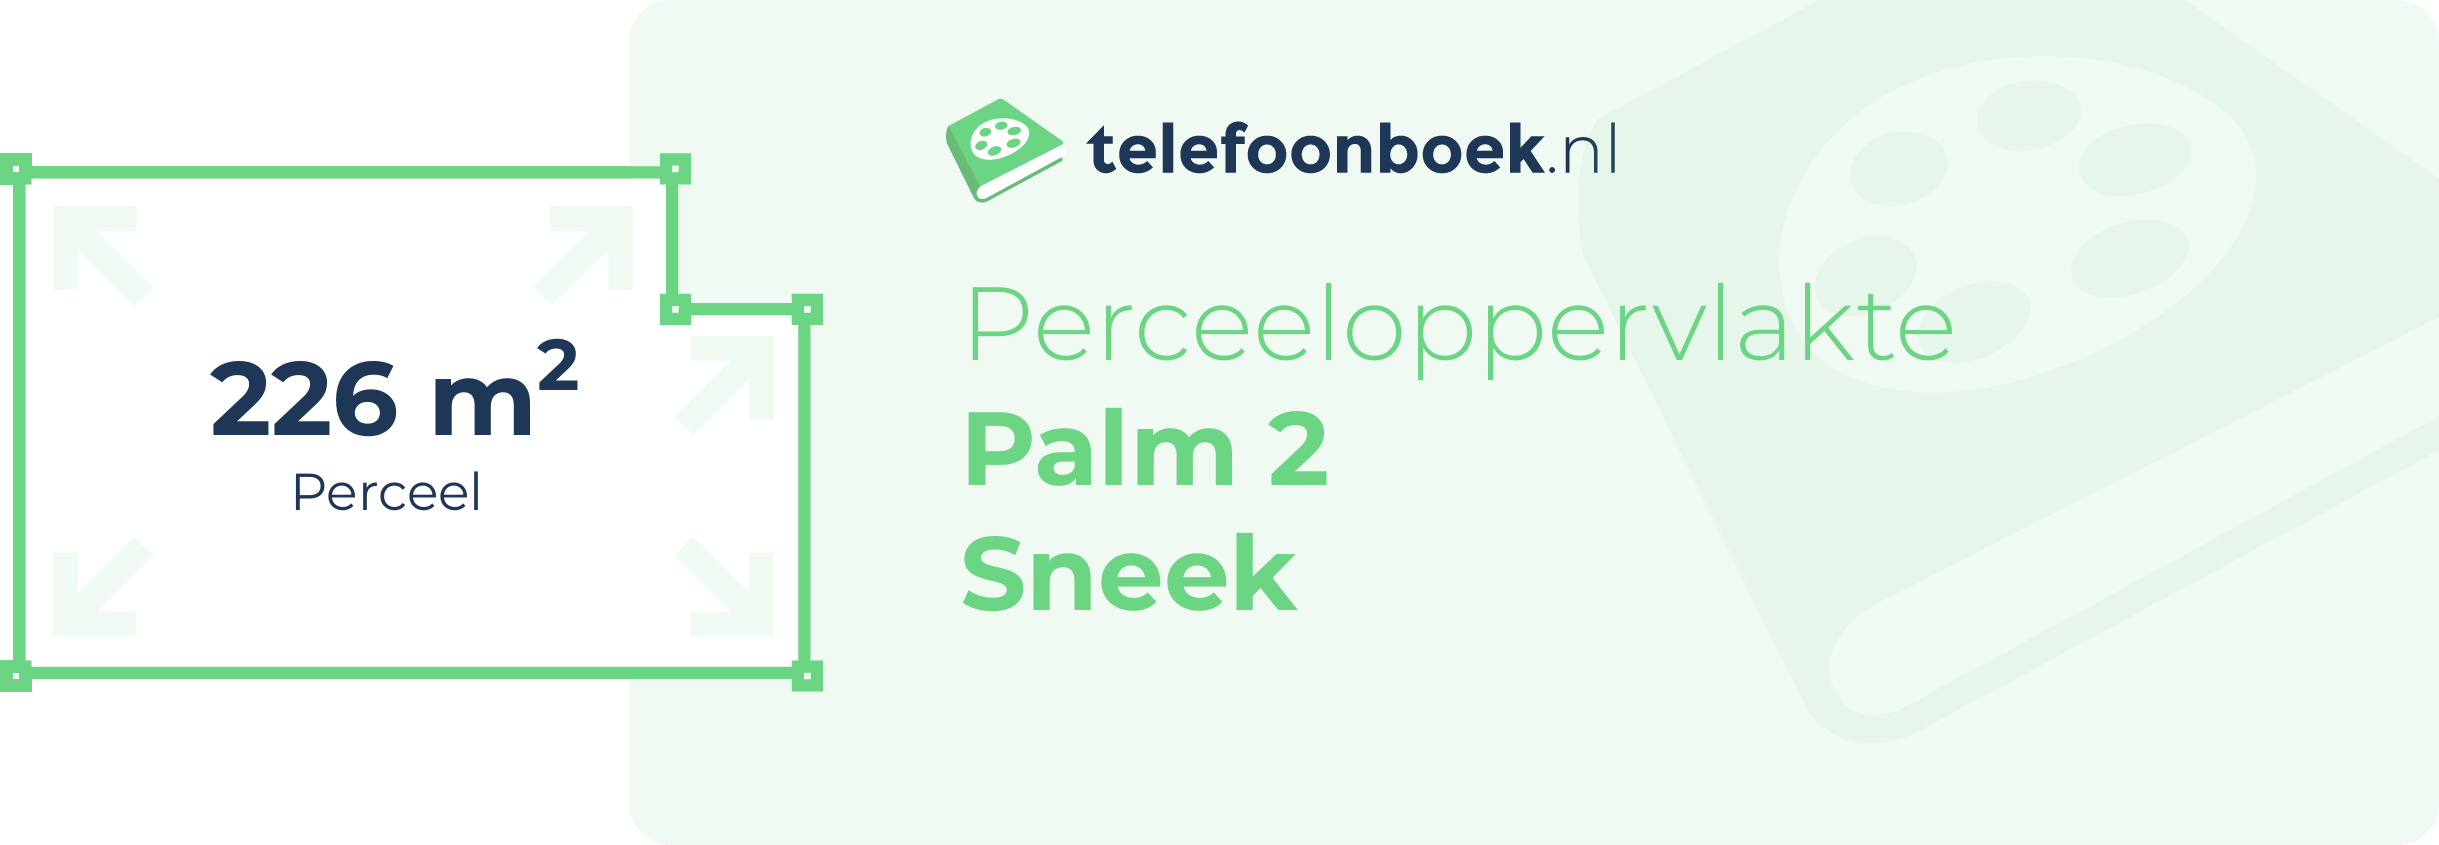 Perceeloppervlakte Palm 2 Sneek